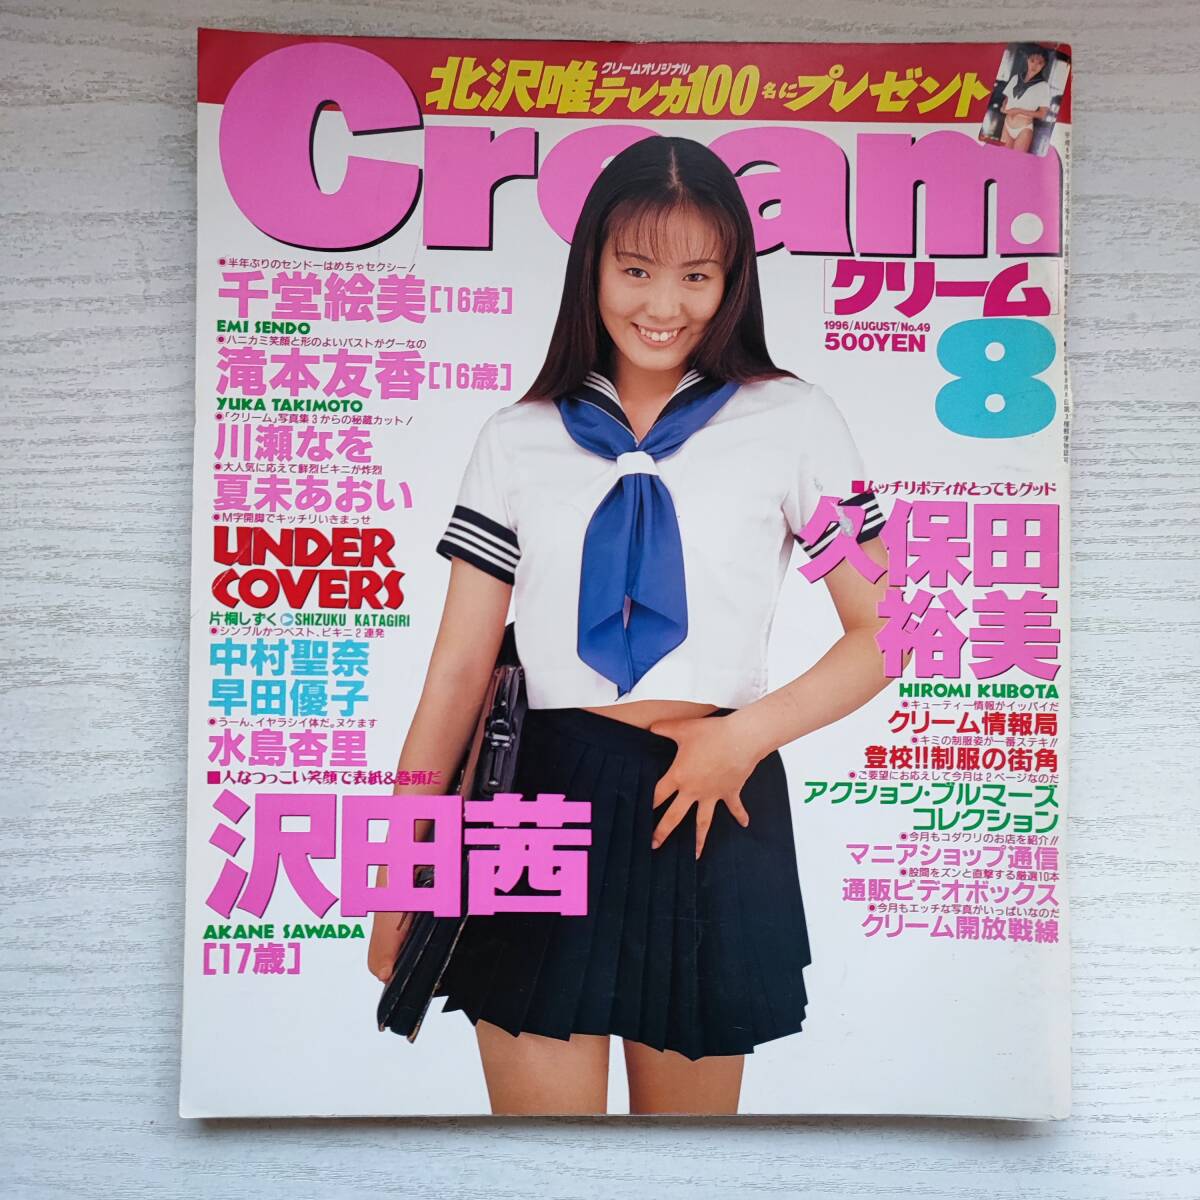 【雑誌】Cream クリーム NO.49 ピンナップ付 1996年8月 ミリオン出版_画像1